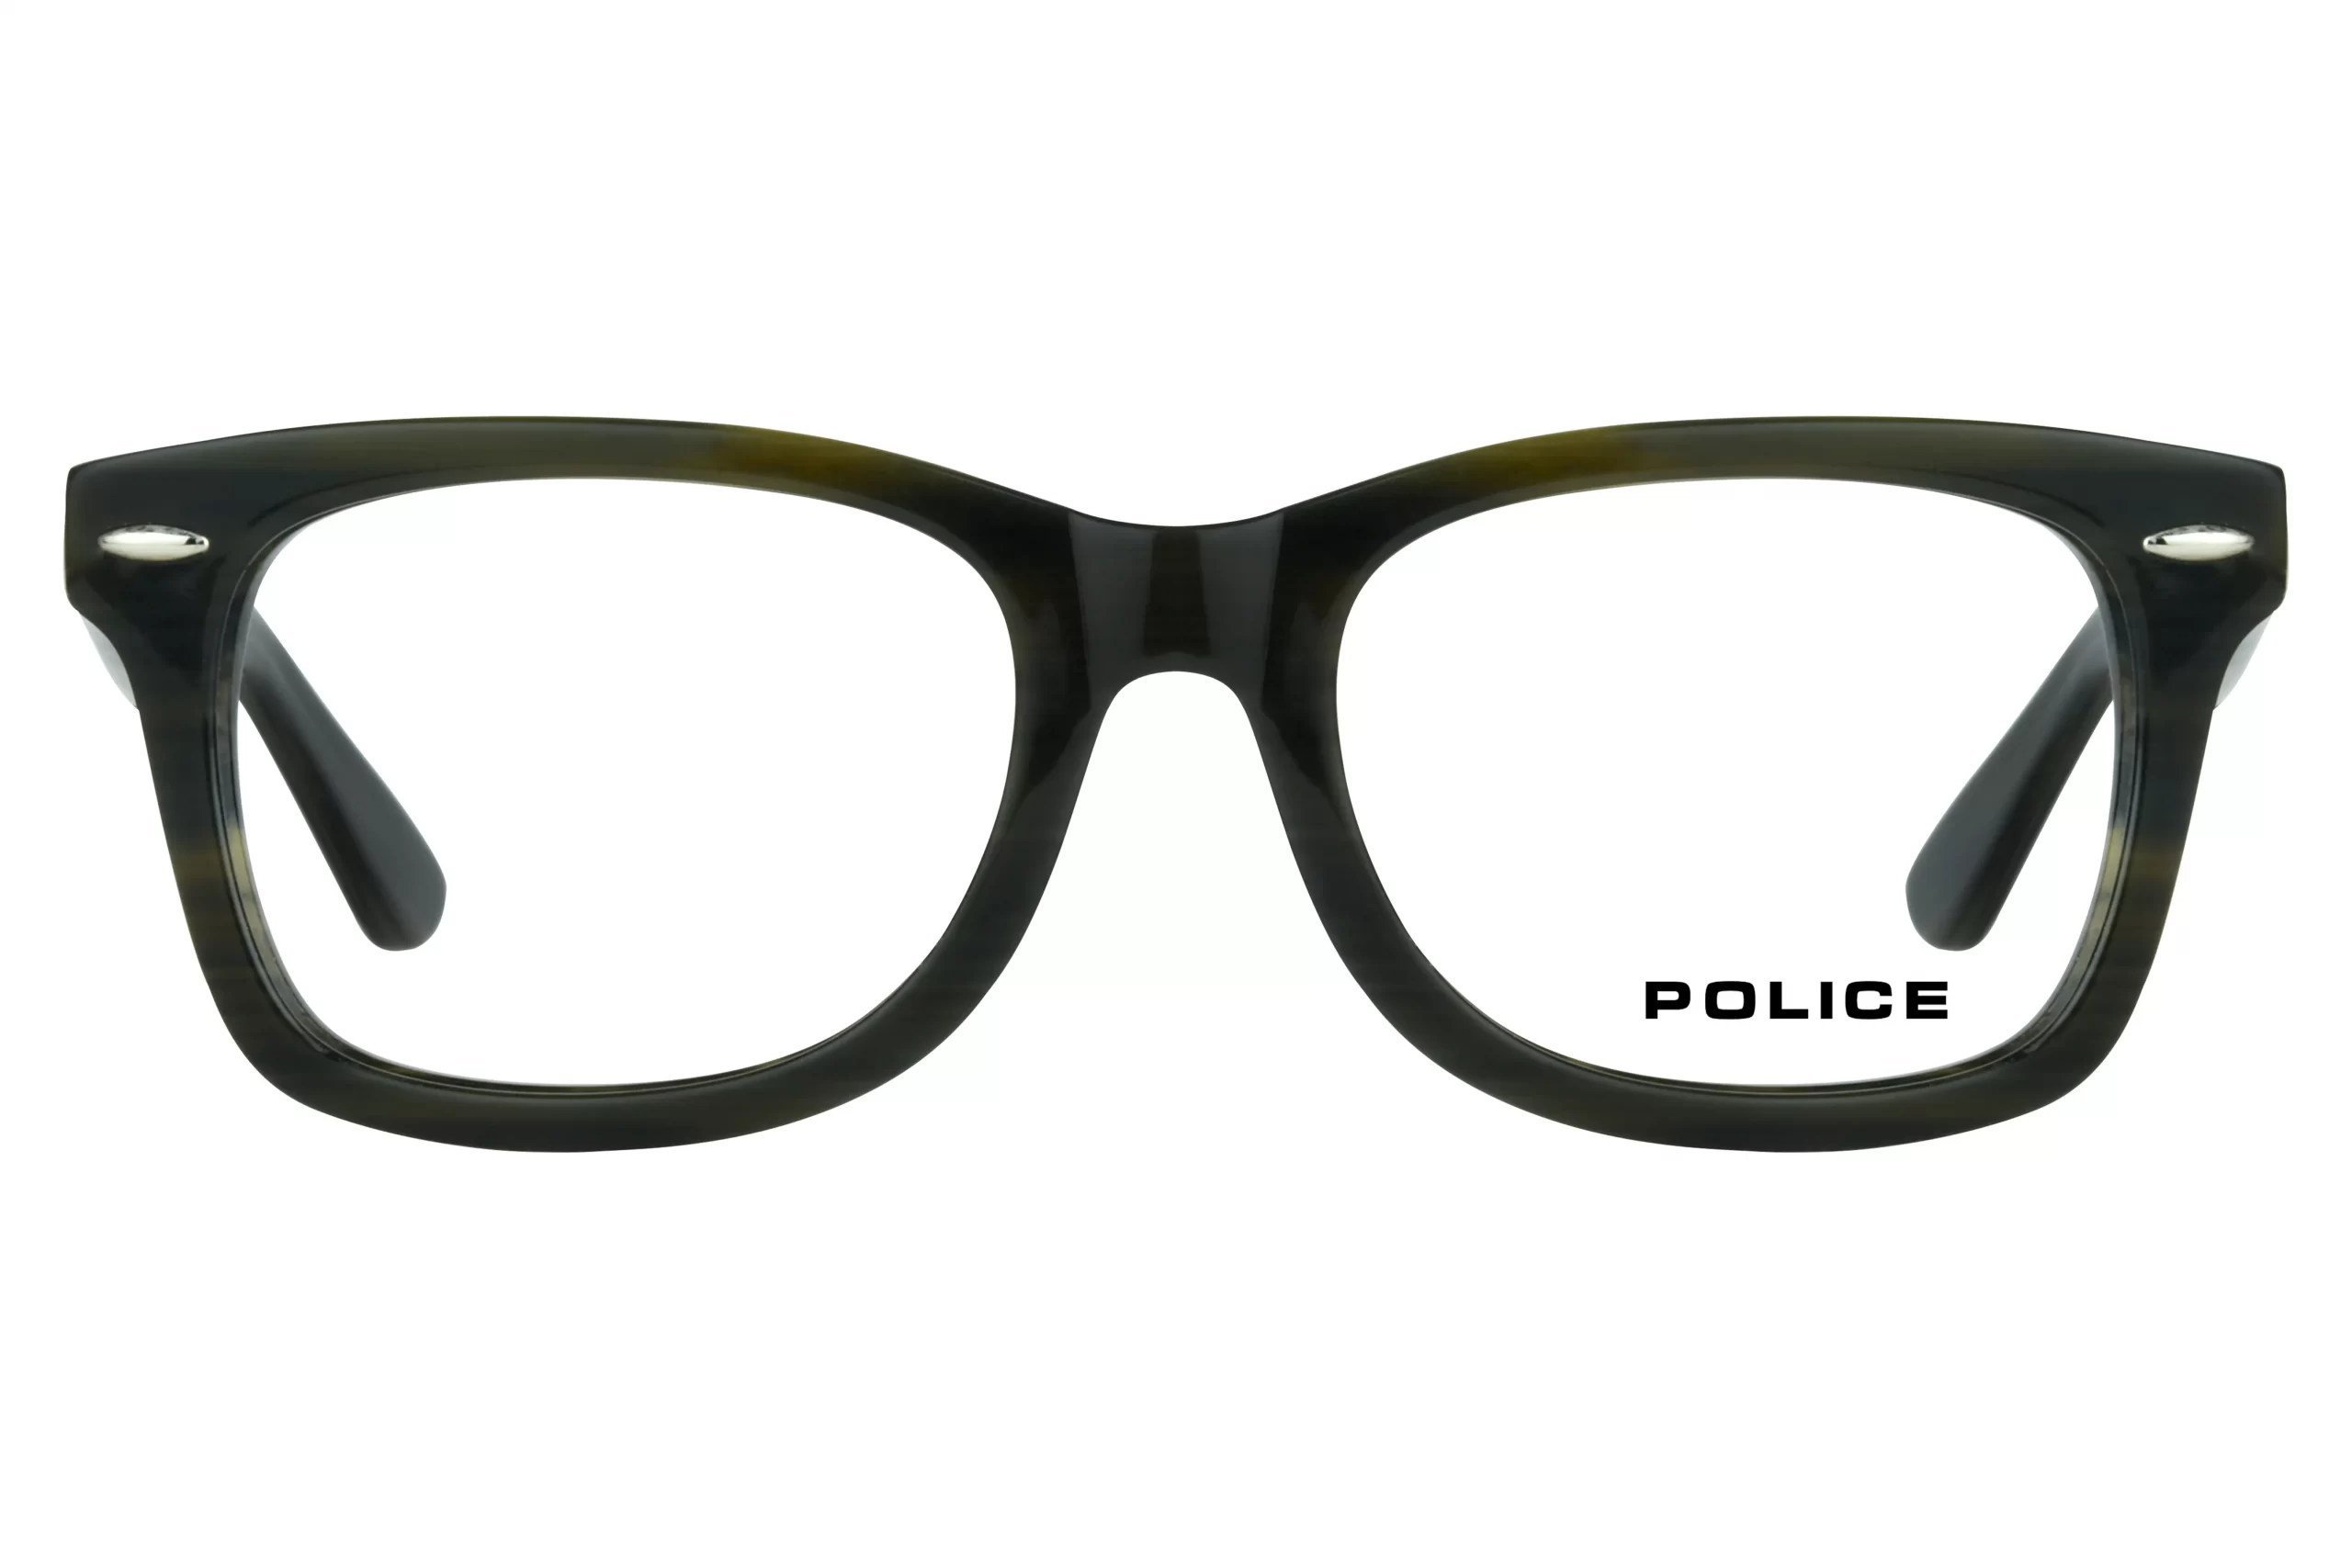 Police Glasses in Pakistan Police Glasses | Ainak.pk